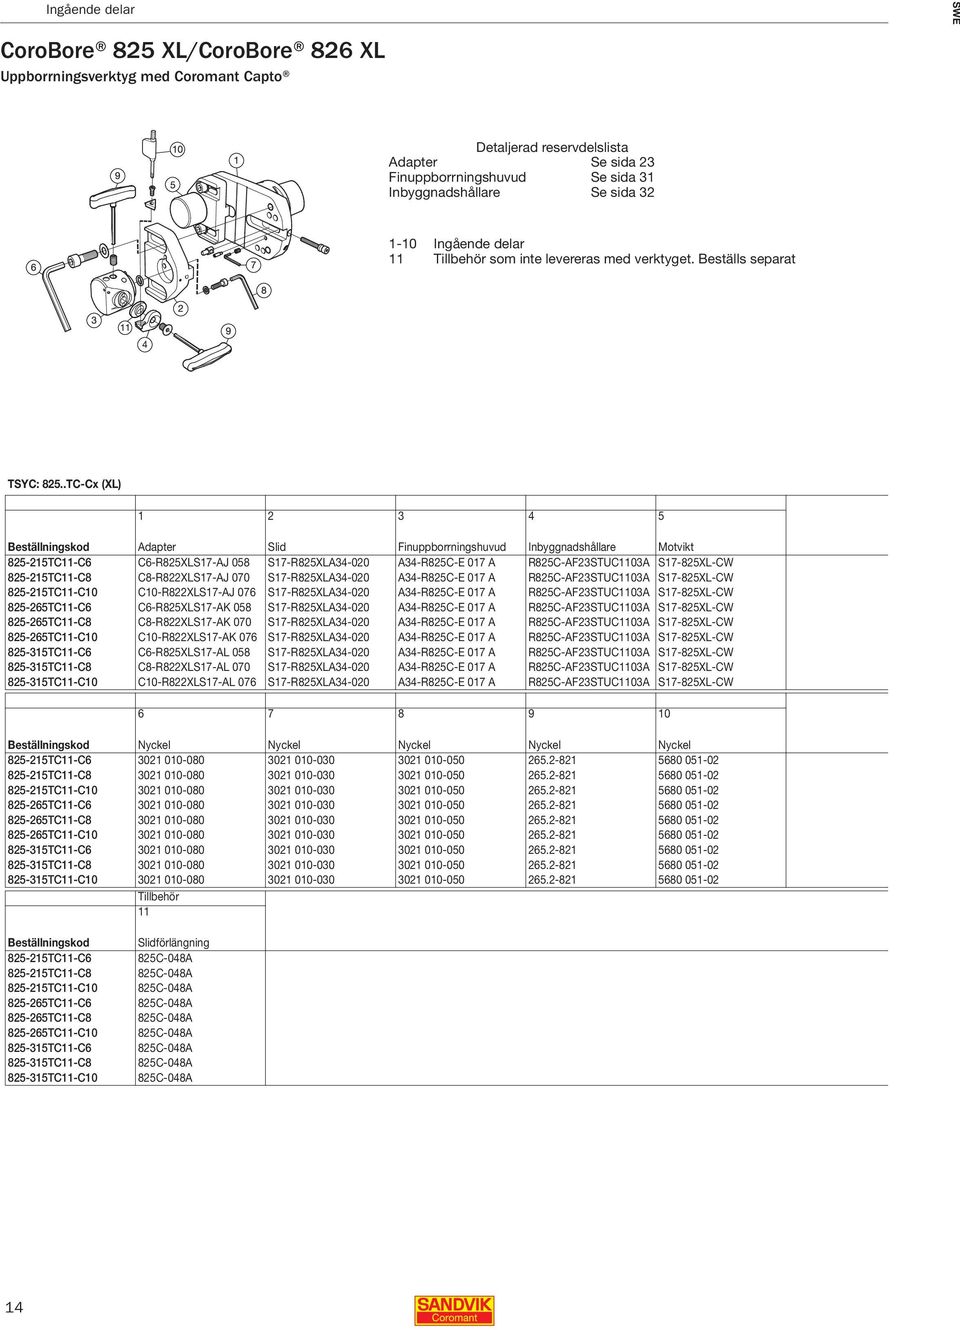 .TC-Cx (XL) Beställningskod Adapter Slid Finuppborrningshuvud Inbyggnadshållare Motvikt 825-215TC11-C6 C6-R825XLS17-AJ 058 S17-R825XLA34-020 A34-R825C-E 017 A R825C-AF23STUC1103A S17-825XL-CW